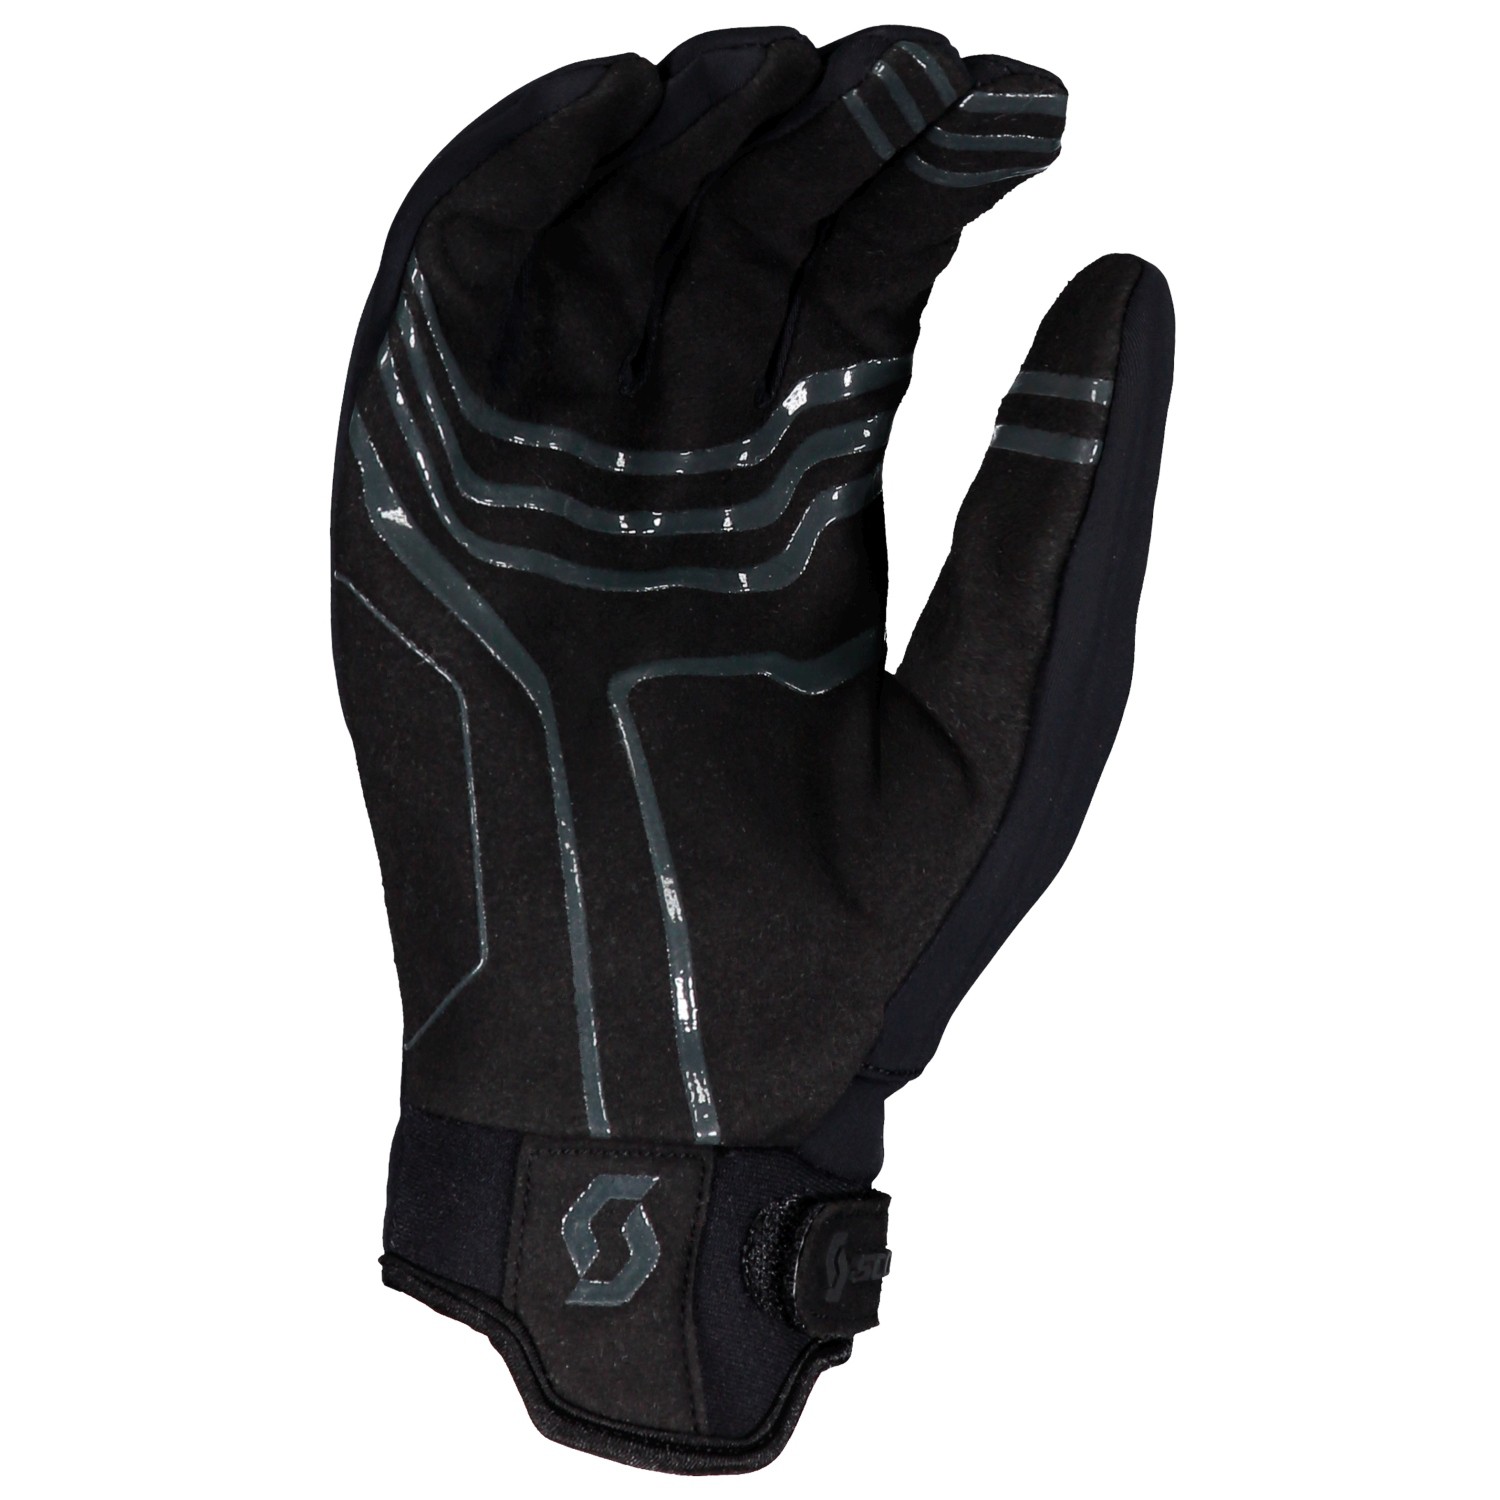  Guantes de ciclismo de invierno, guantes de bicicleta de dedo  completo, almohadilla de goma de montaña, pantalla táctil, guantes de  bicicleta de montaña, 2 colores (color negro) : Todo lo demás